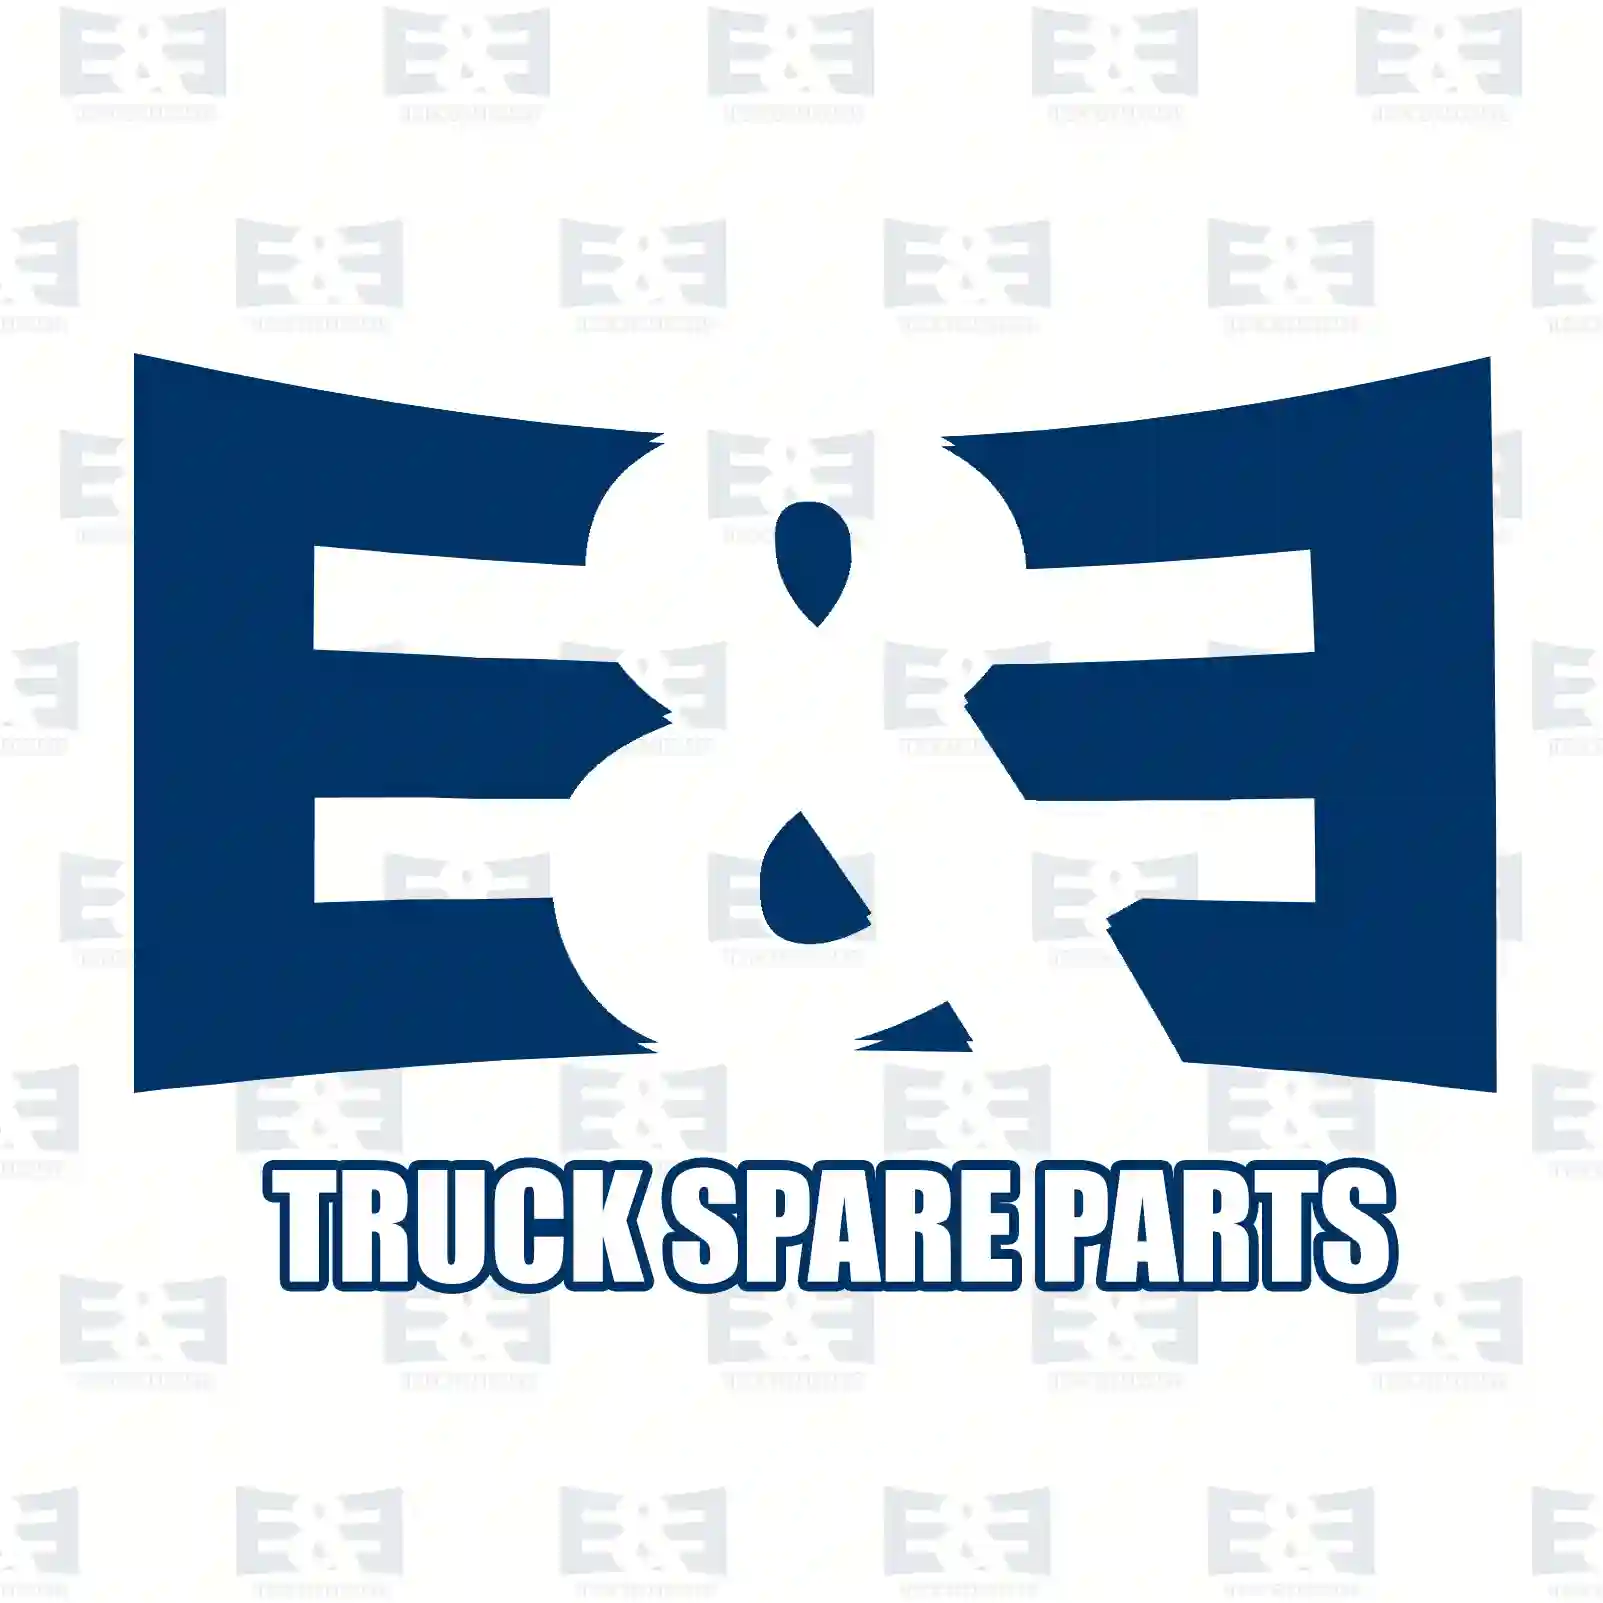 Bushing, 2E2277392, #YOK ||  2E2277392 E&E Truck Spare Parts | Truck Spare Parts, Auotomotive Spare Parts Bushing, 2E2277392, #YOK ||  2E2277392 E&E Truck Spare Parts | Truck Spare Parts, Auotomotive Spare Parts